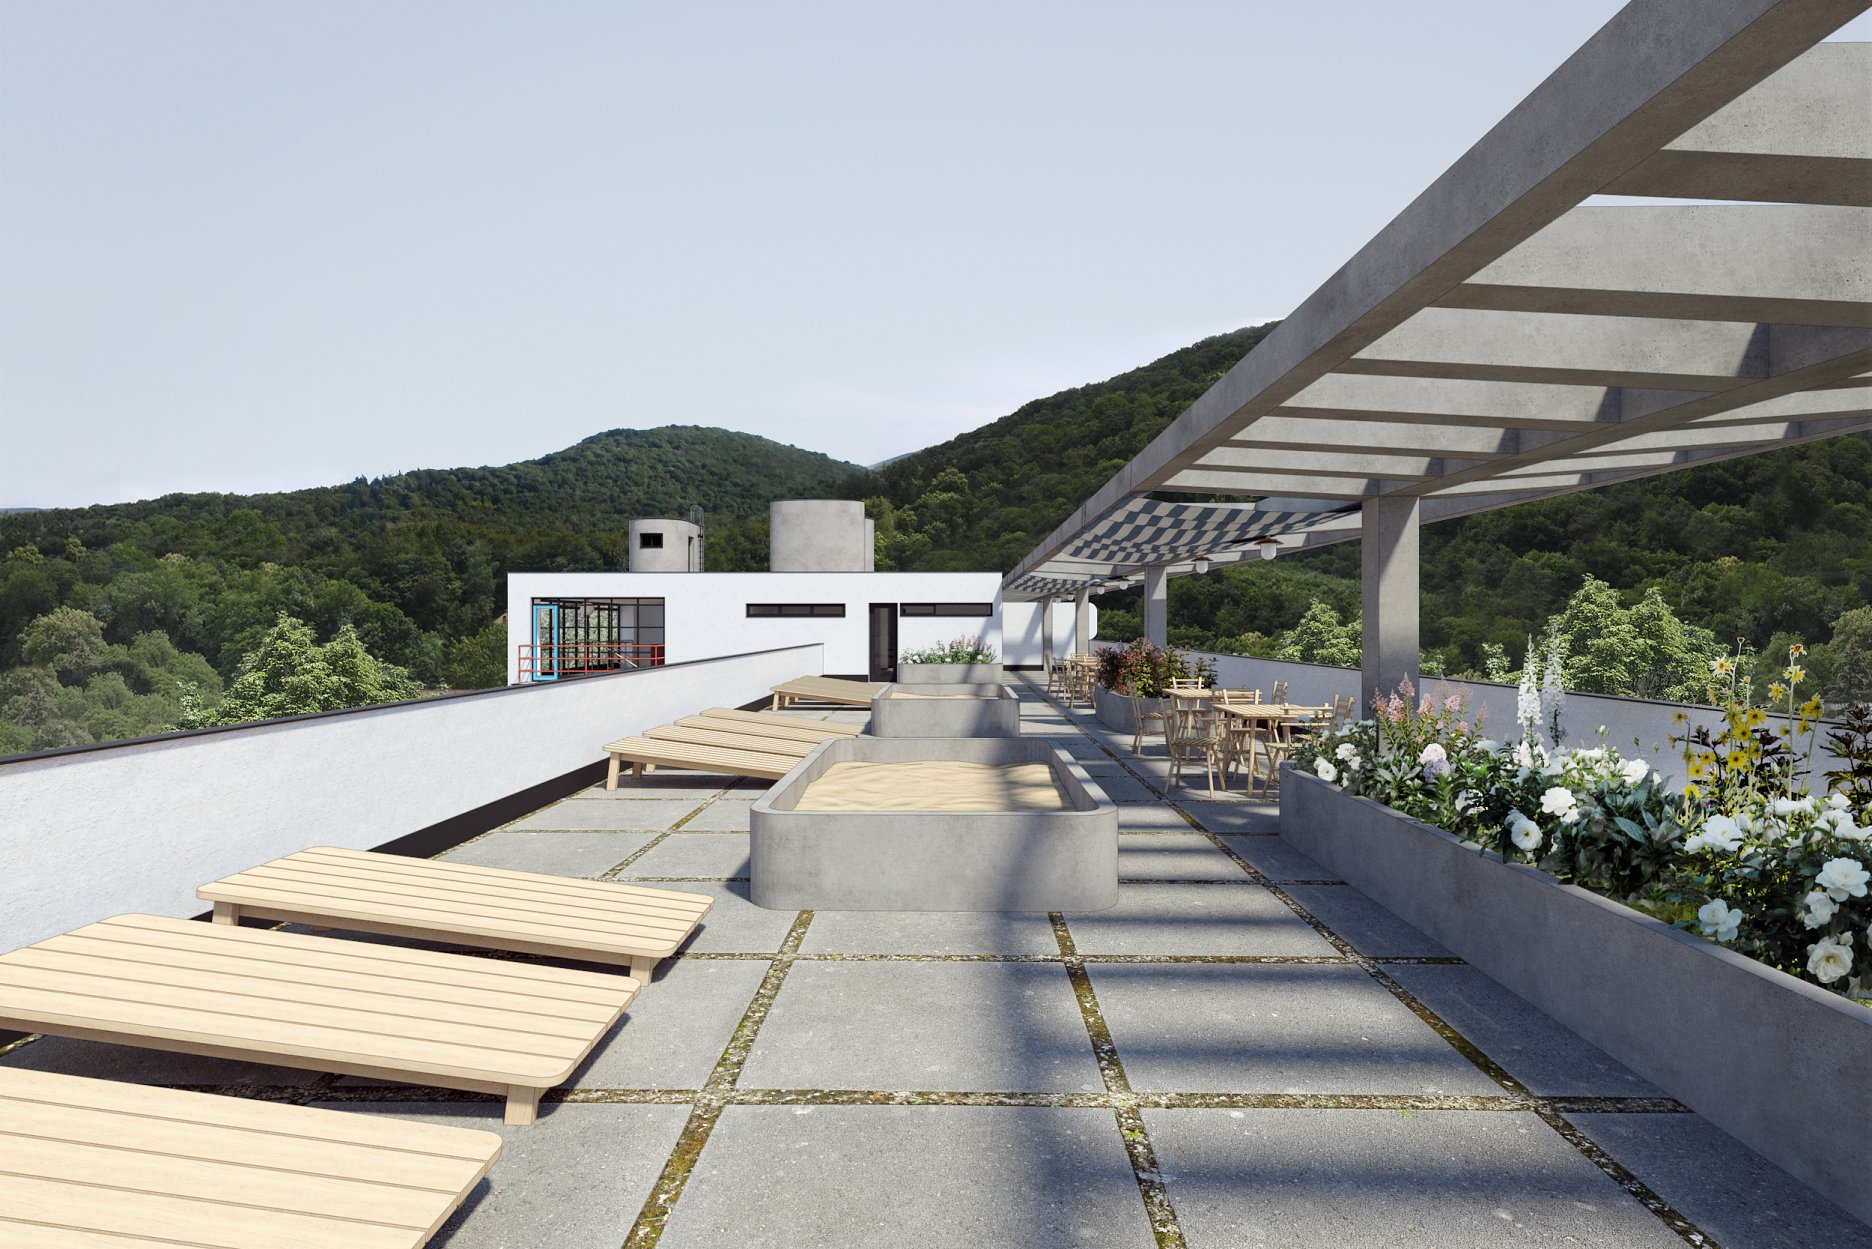 Strešná terasa nad lôžkovou časťou - vizualizácia zahŕňajúca farebné riešenie